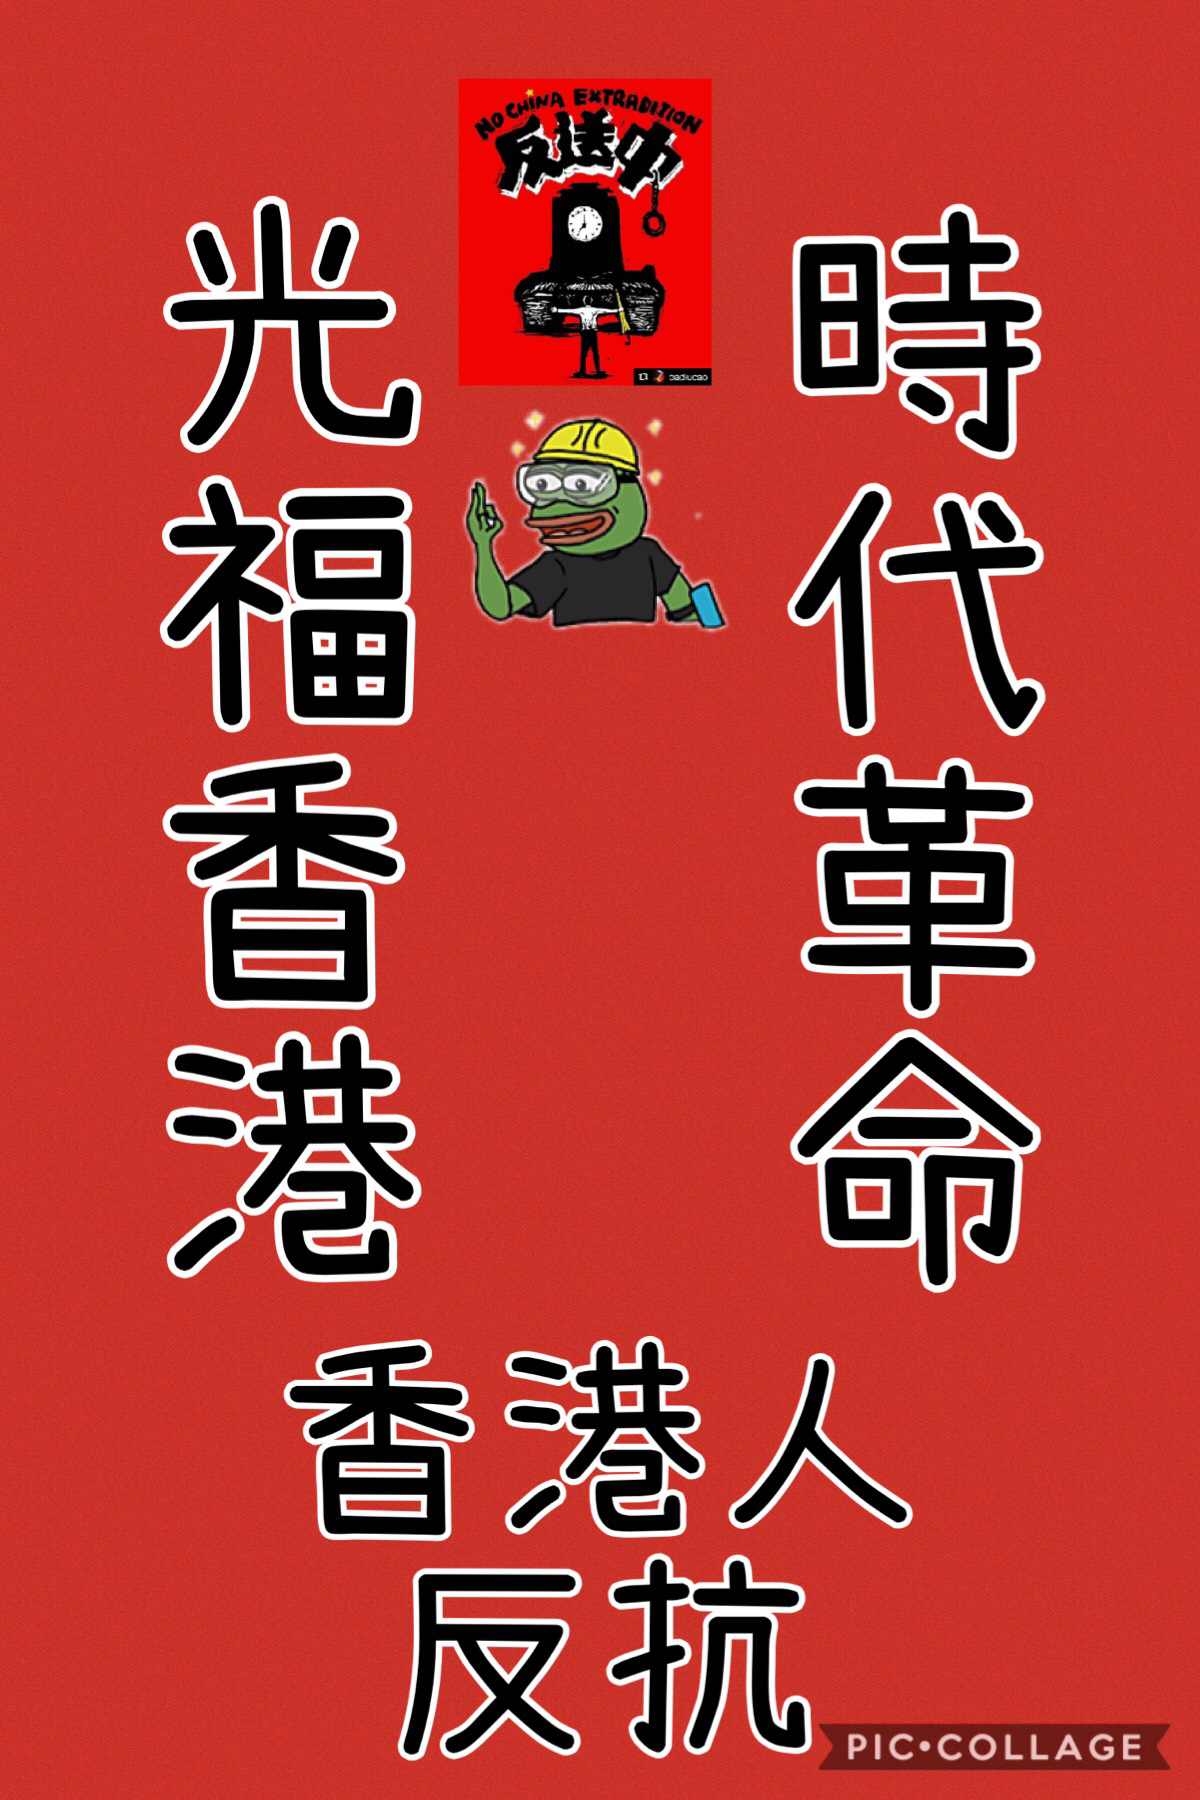 光復香港時代革命
各位新年快樂